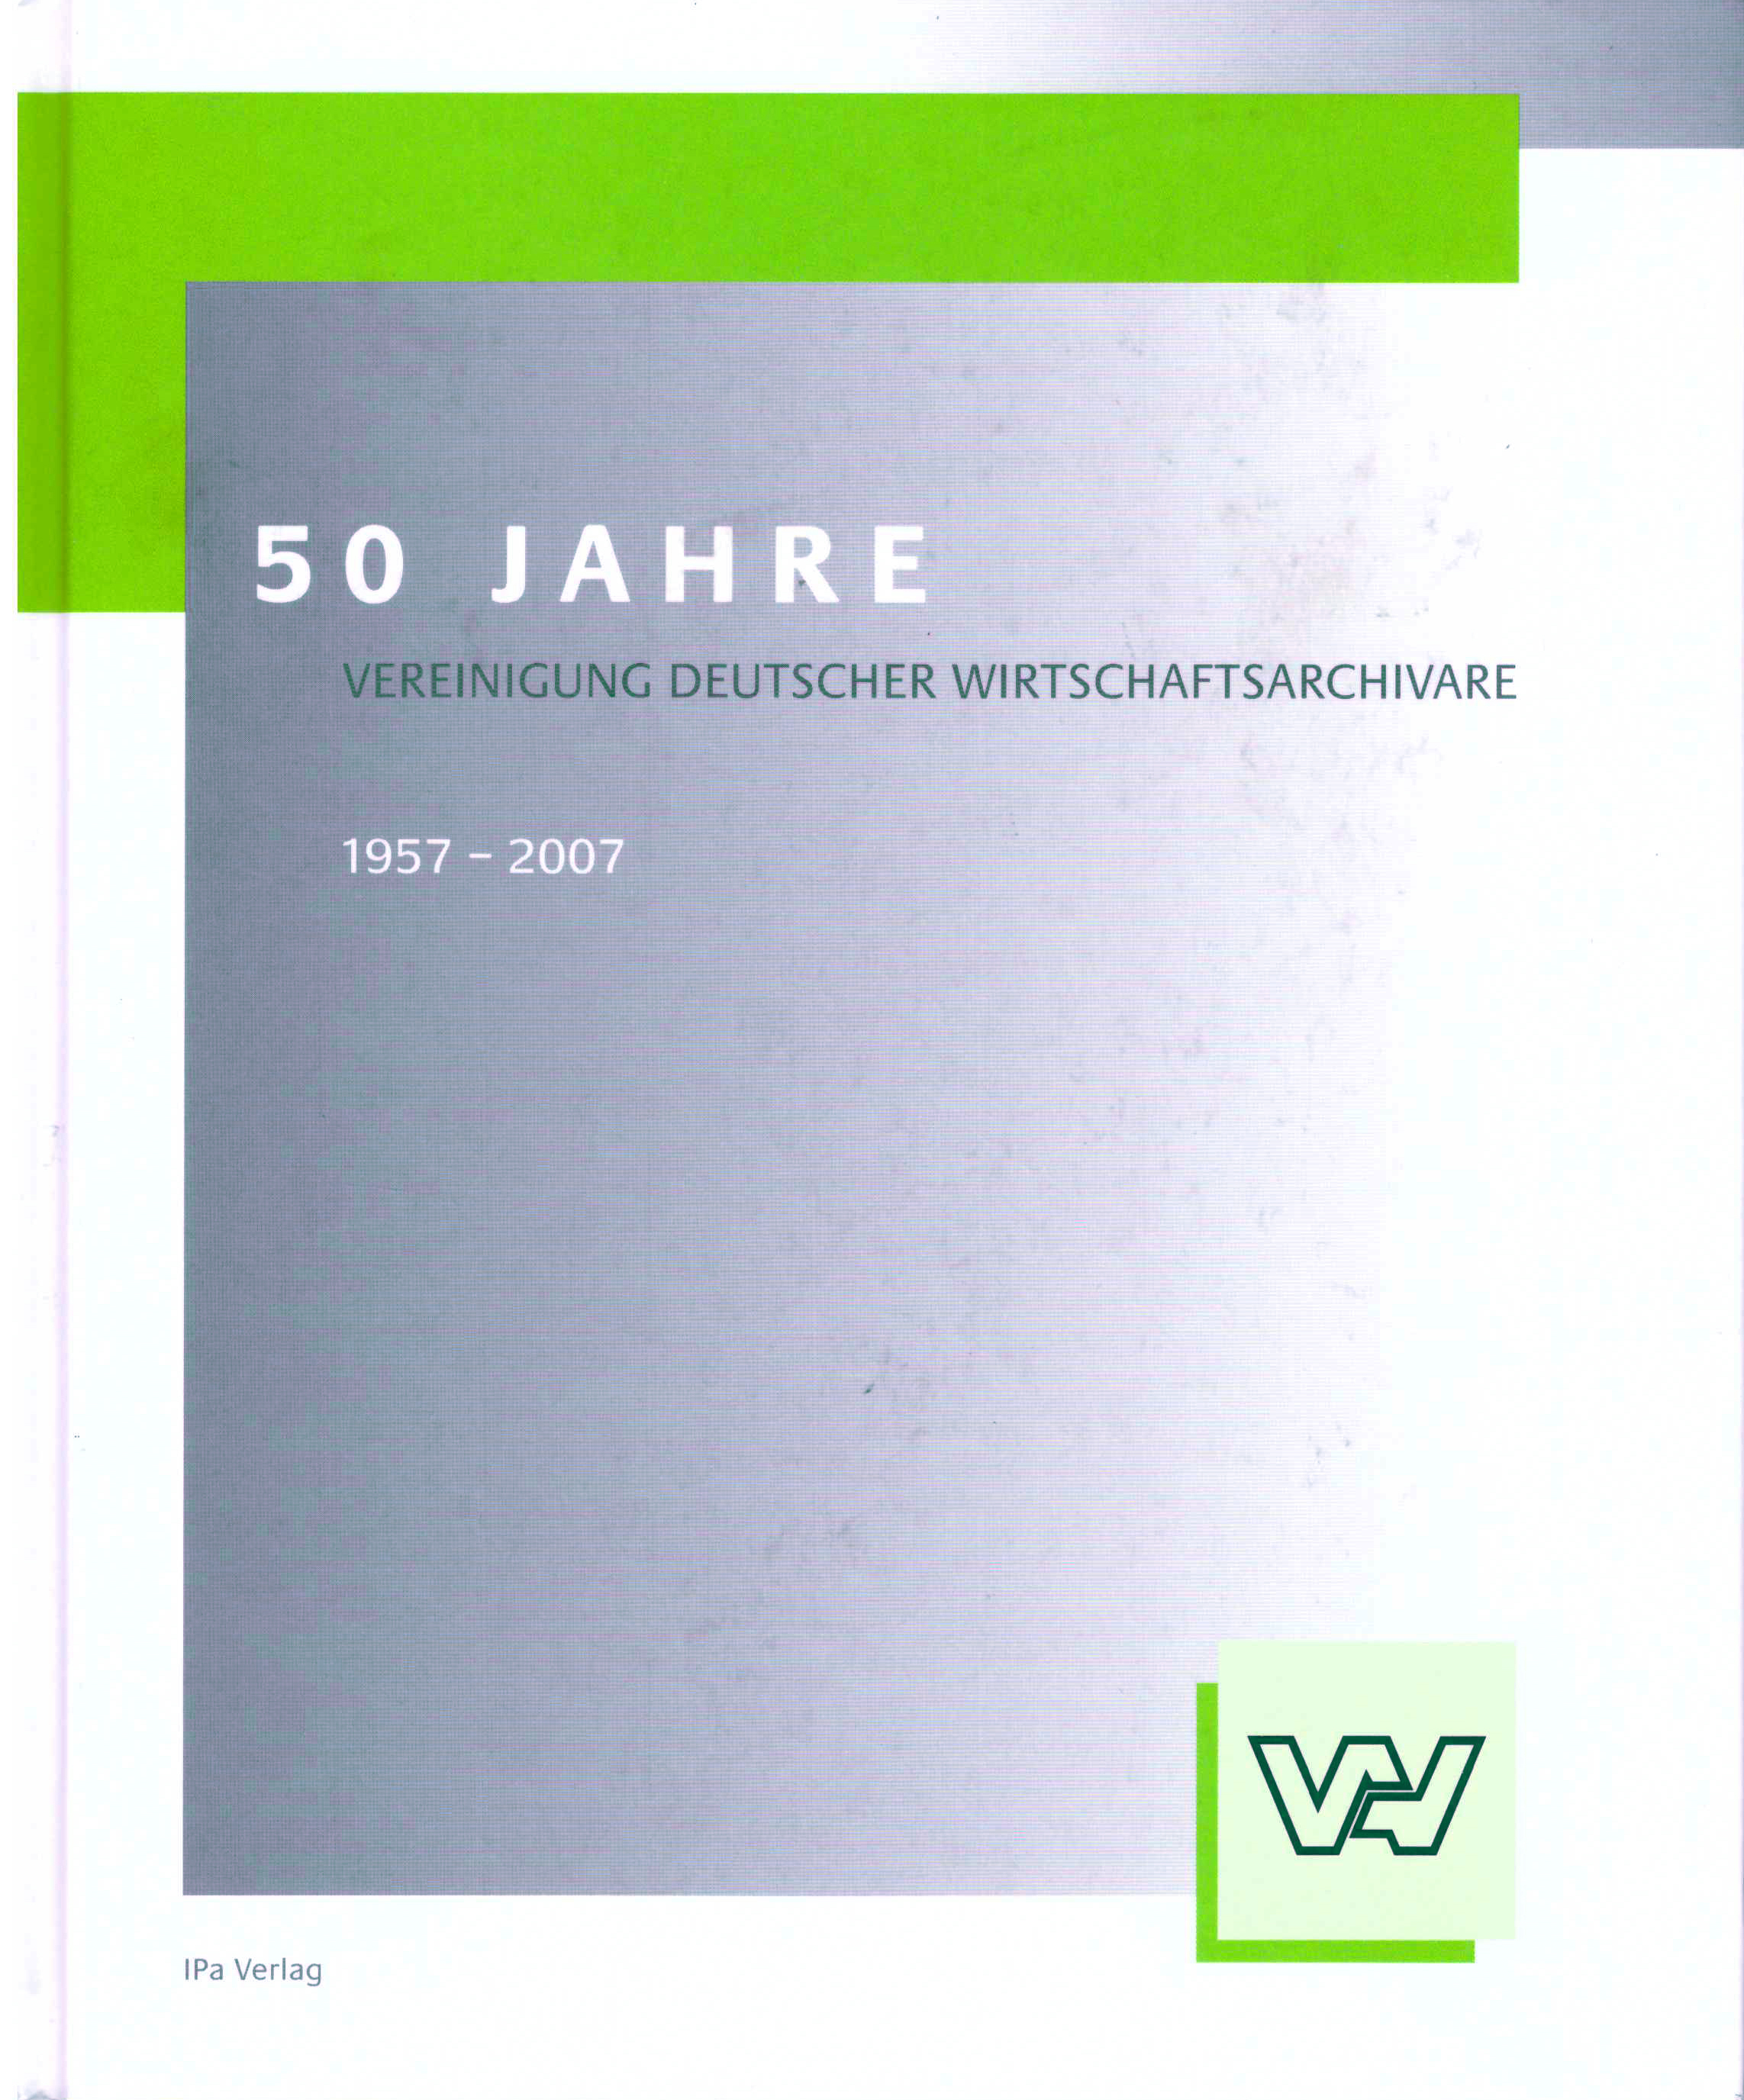 50 Jahre Vereinigung deutscher Wirtschaftsarchivare